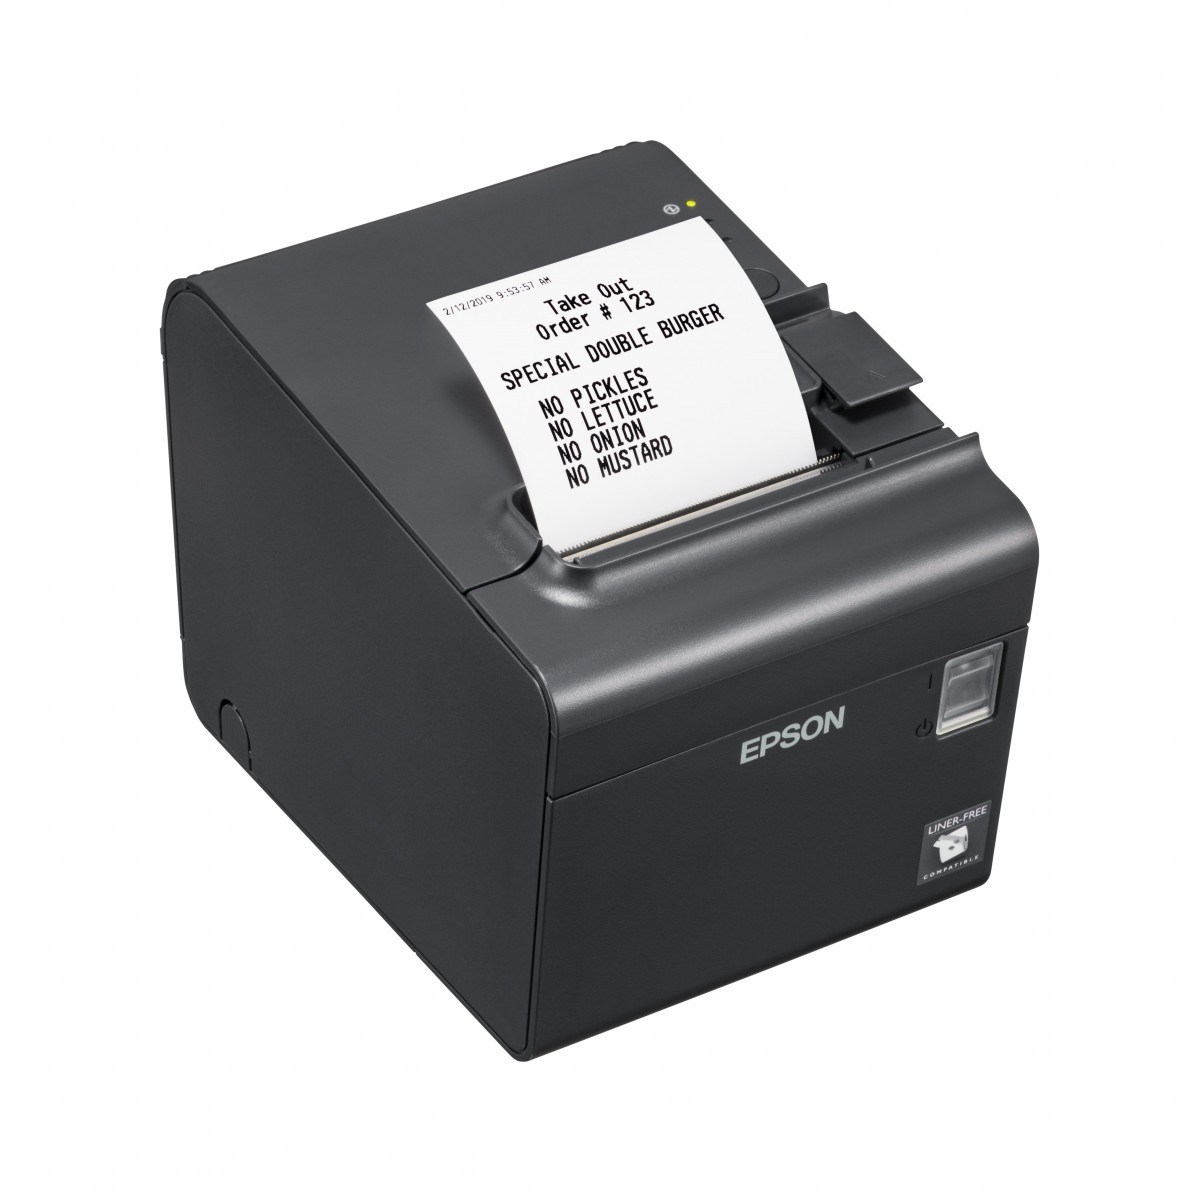 Epson TM-L90LF (682) - Thermal - POS printer - 203 x 203 DPI - 90 mm/sec - 10.2 cm - Wired